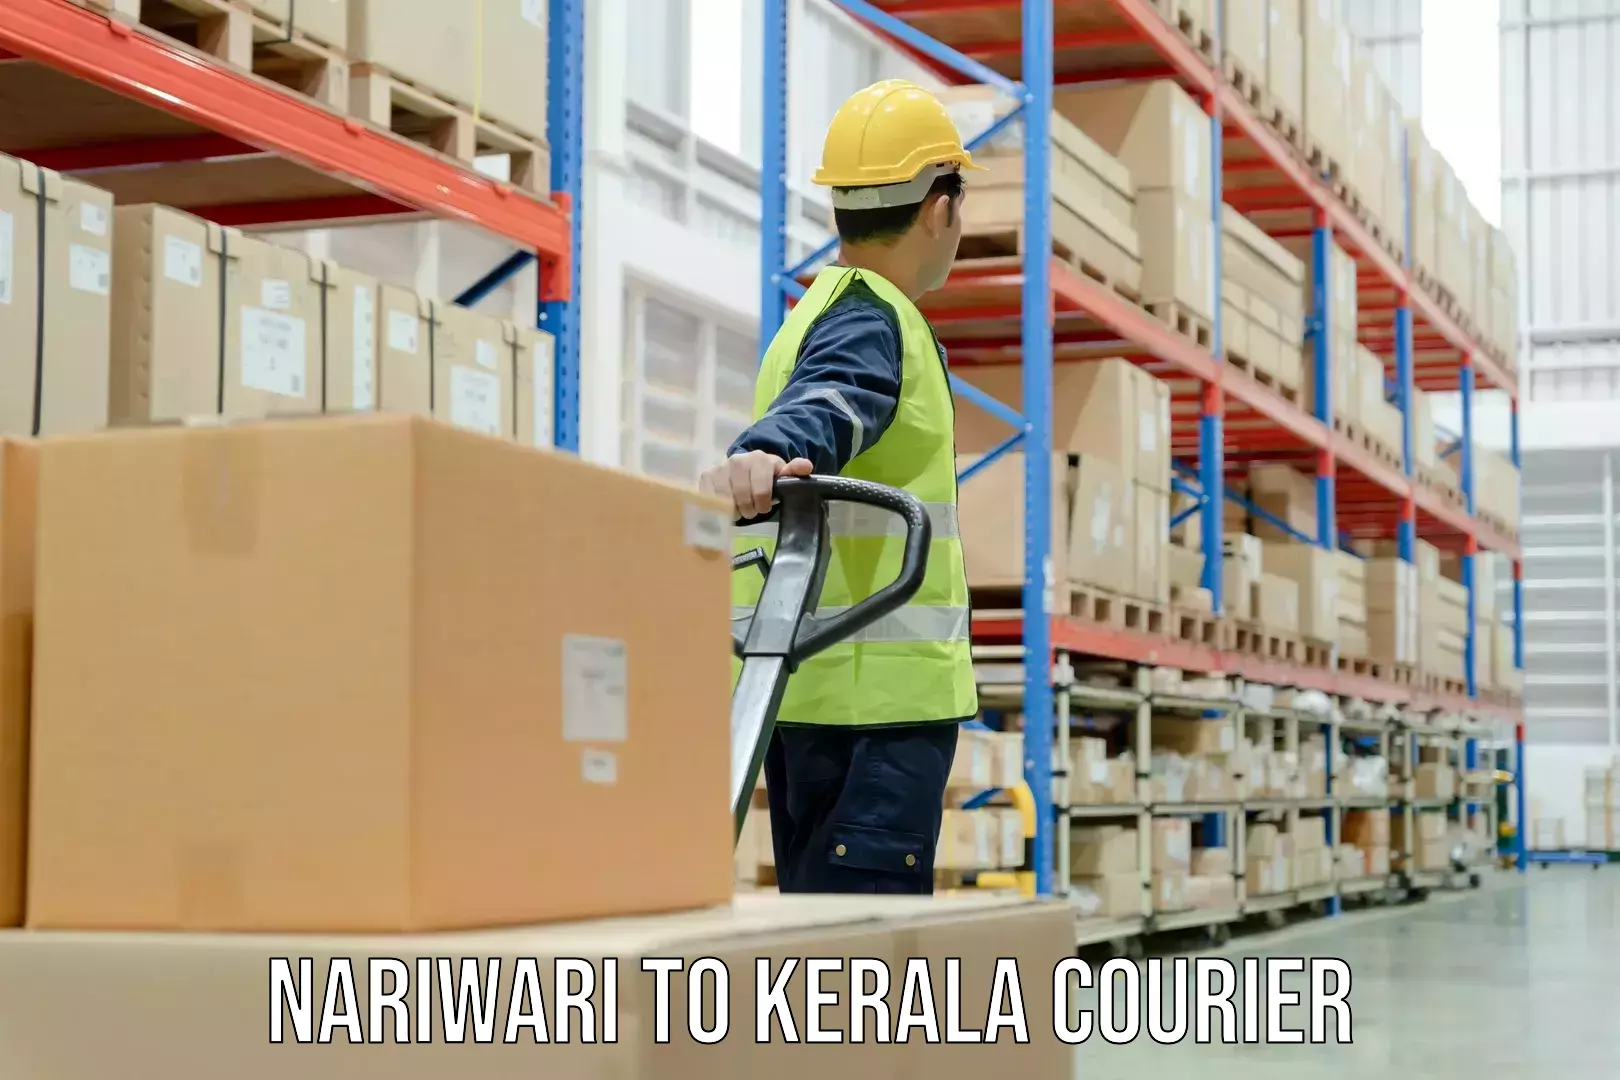 Courier service booking Nariwari to Thiruvananthapuram